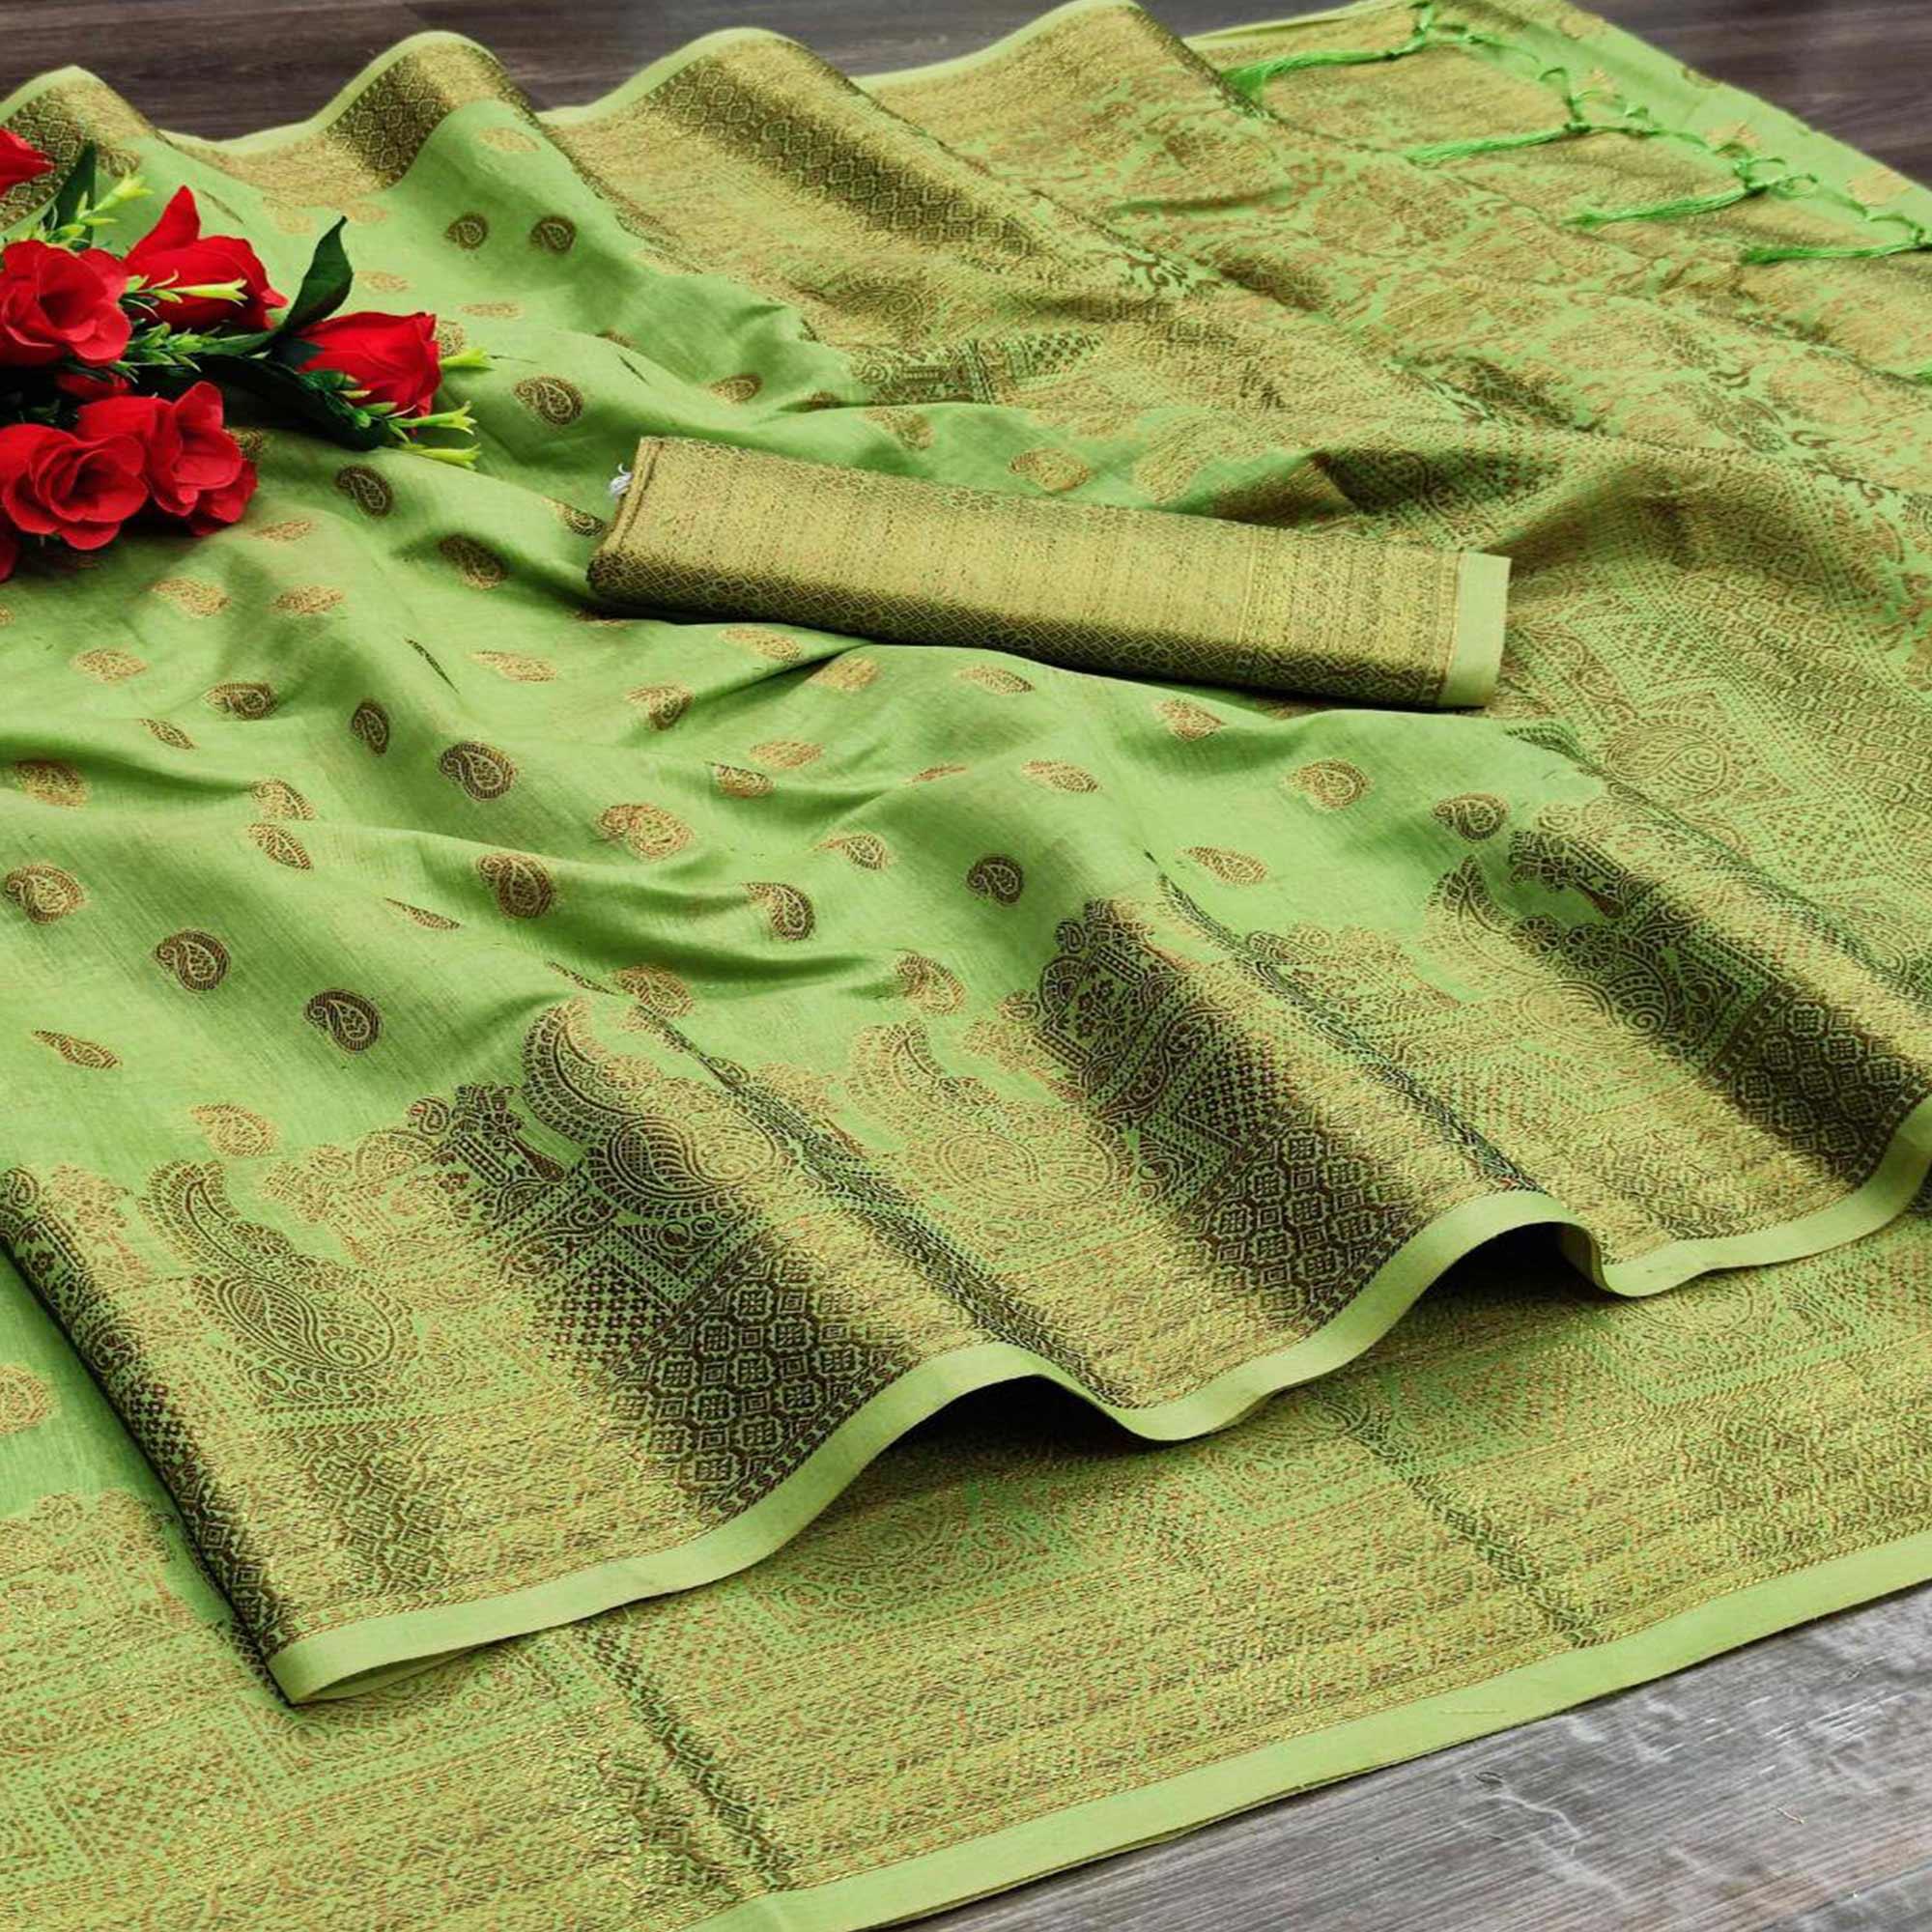 Green Festive Wear Woven With  Meena Butta Rich Pallu Cotton Saree - Peachmode